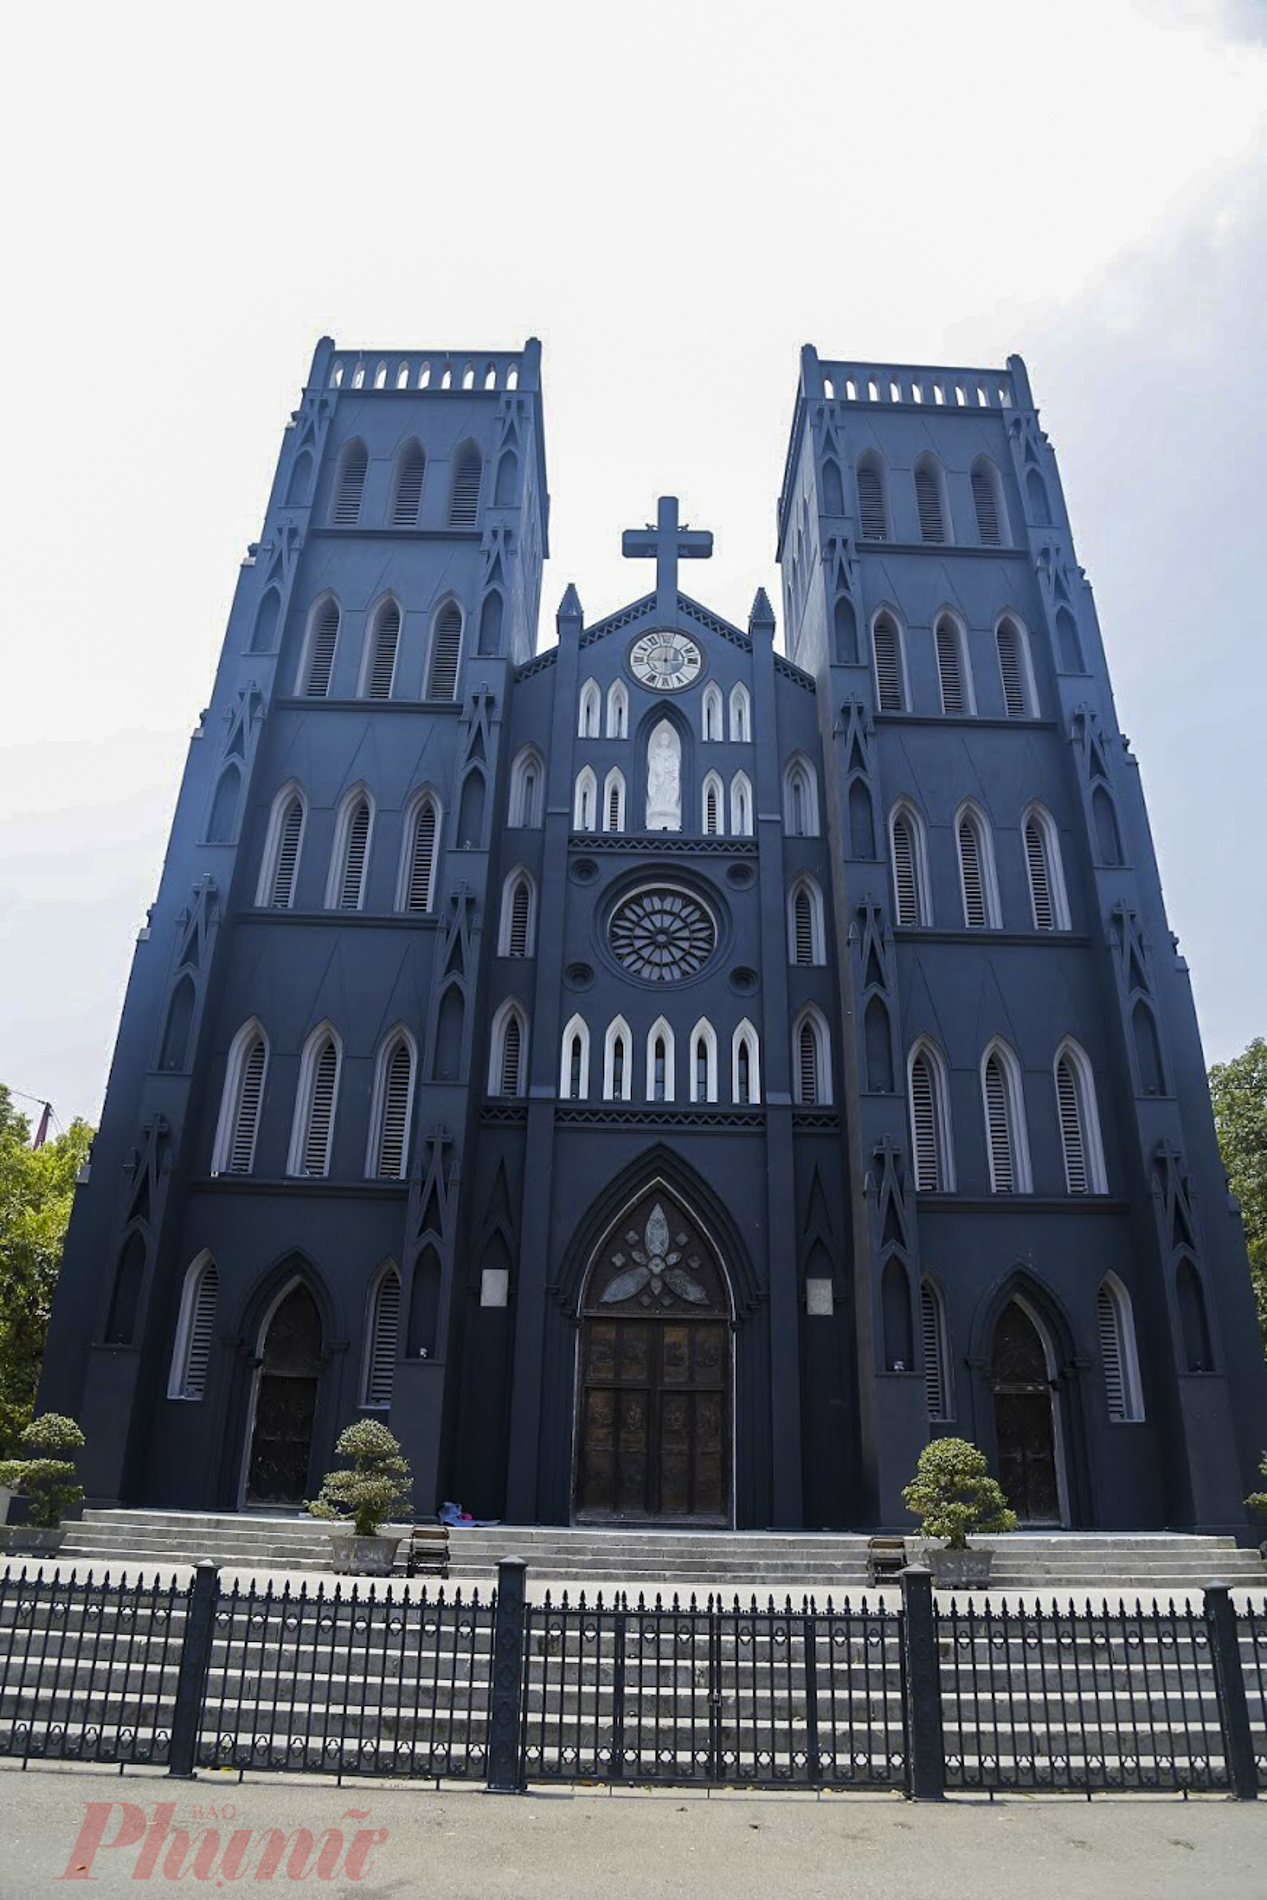 Tính đến thời điểm hiện tại, việc trùng tu nhà thờ gần như đã hoàn thiện chỉ còn phần sơn 2 tháp và mặt trước cửa nhà thờ.